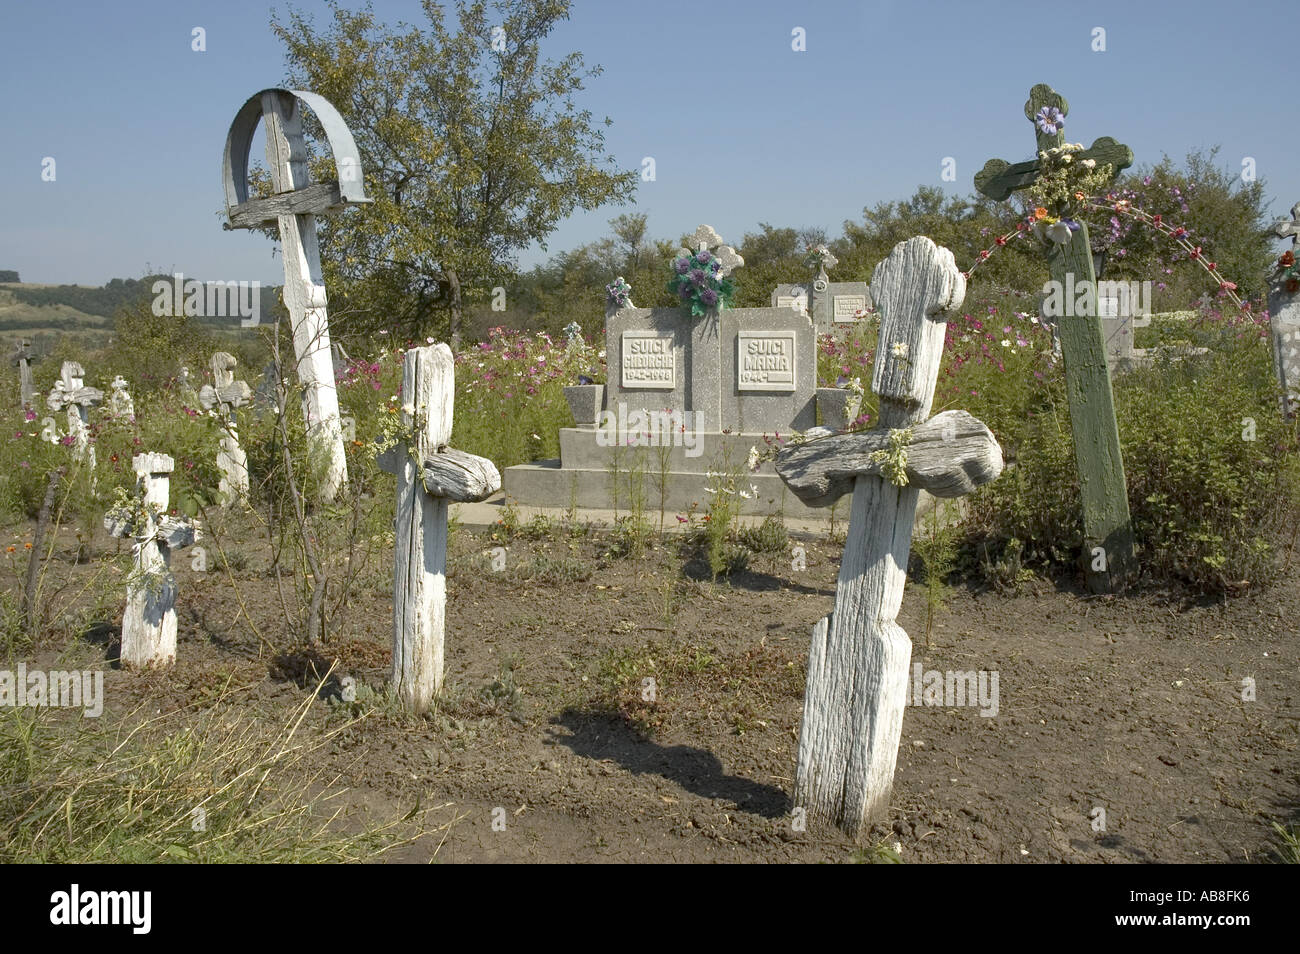 graves with gravestones, Romania Stock Photo